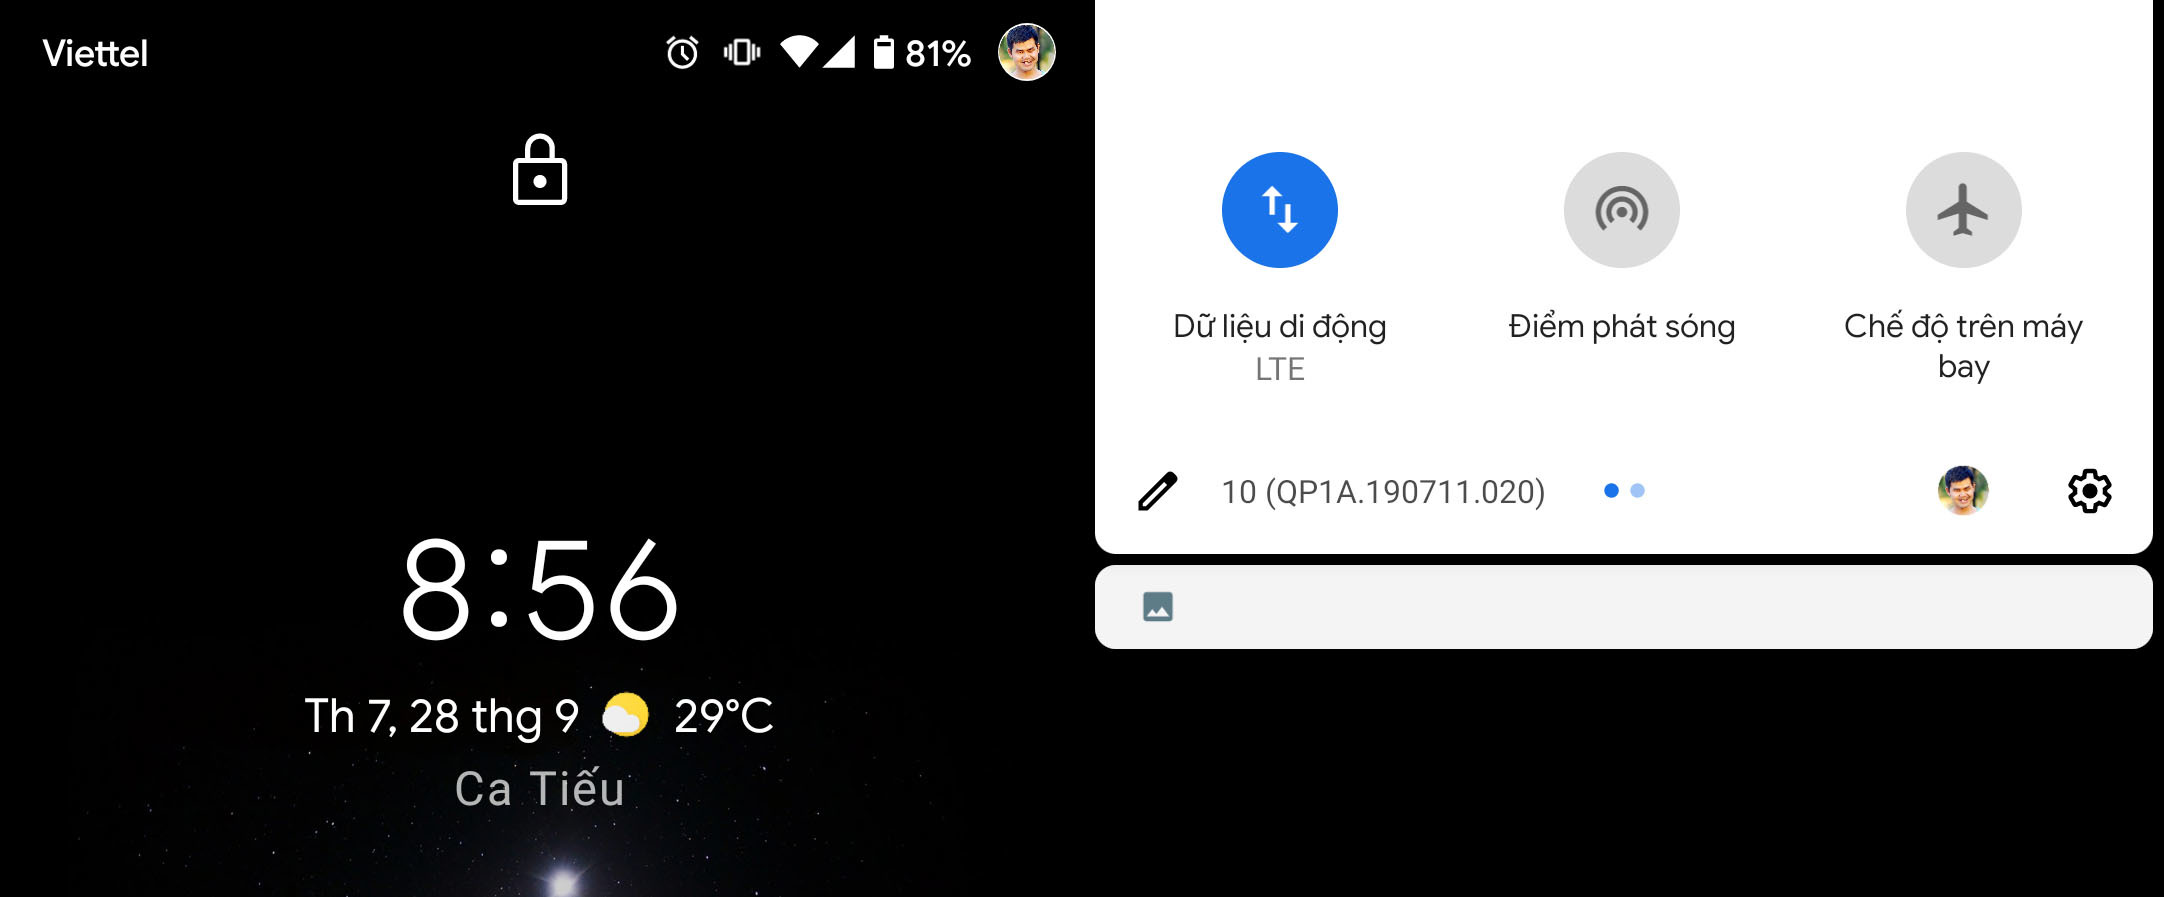 Cách hiển thị ảnh đại diện cá nhân trên màn hình khóa Android 10